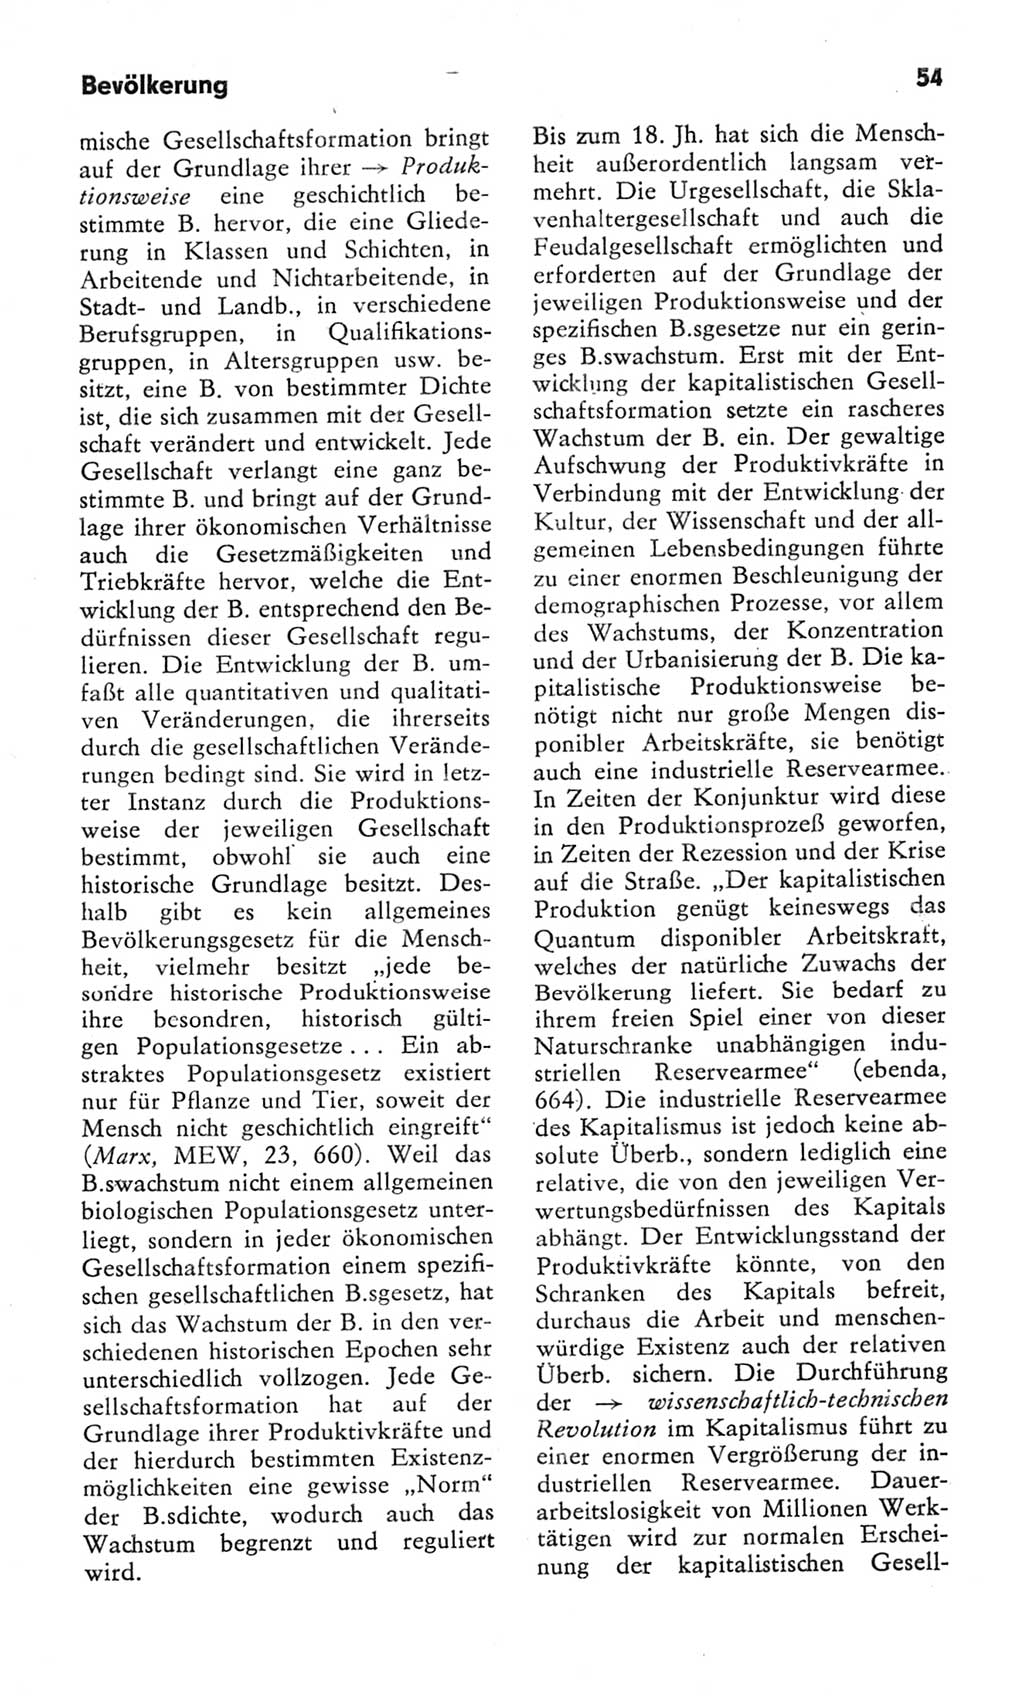 Kleines Wörterbuch der marxistisch-leninistischen Philosophie [Deutsche Demokratische Republik (DDR)] 1982, Seite 54 (Kl. Wb. ML Phil. DDR 1982, S. 54)